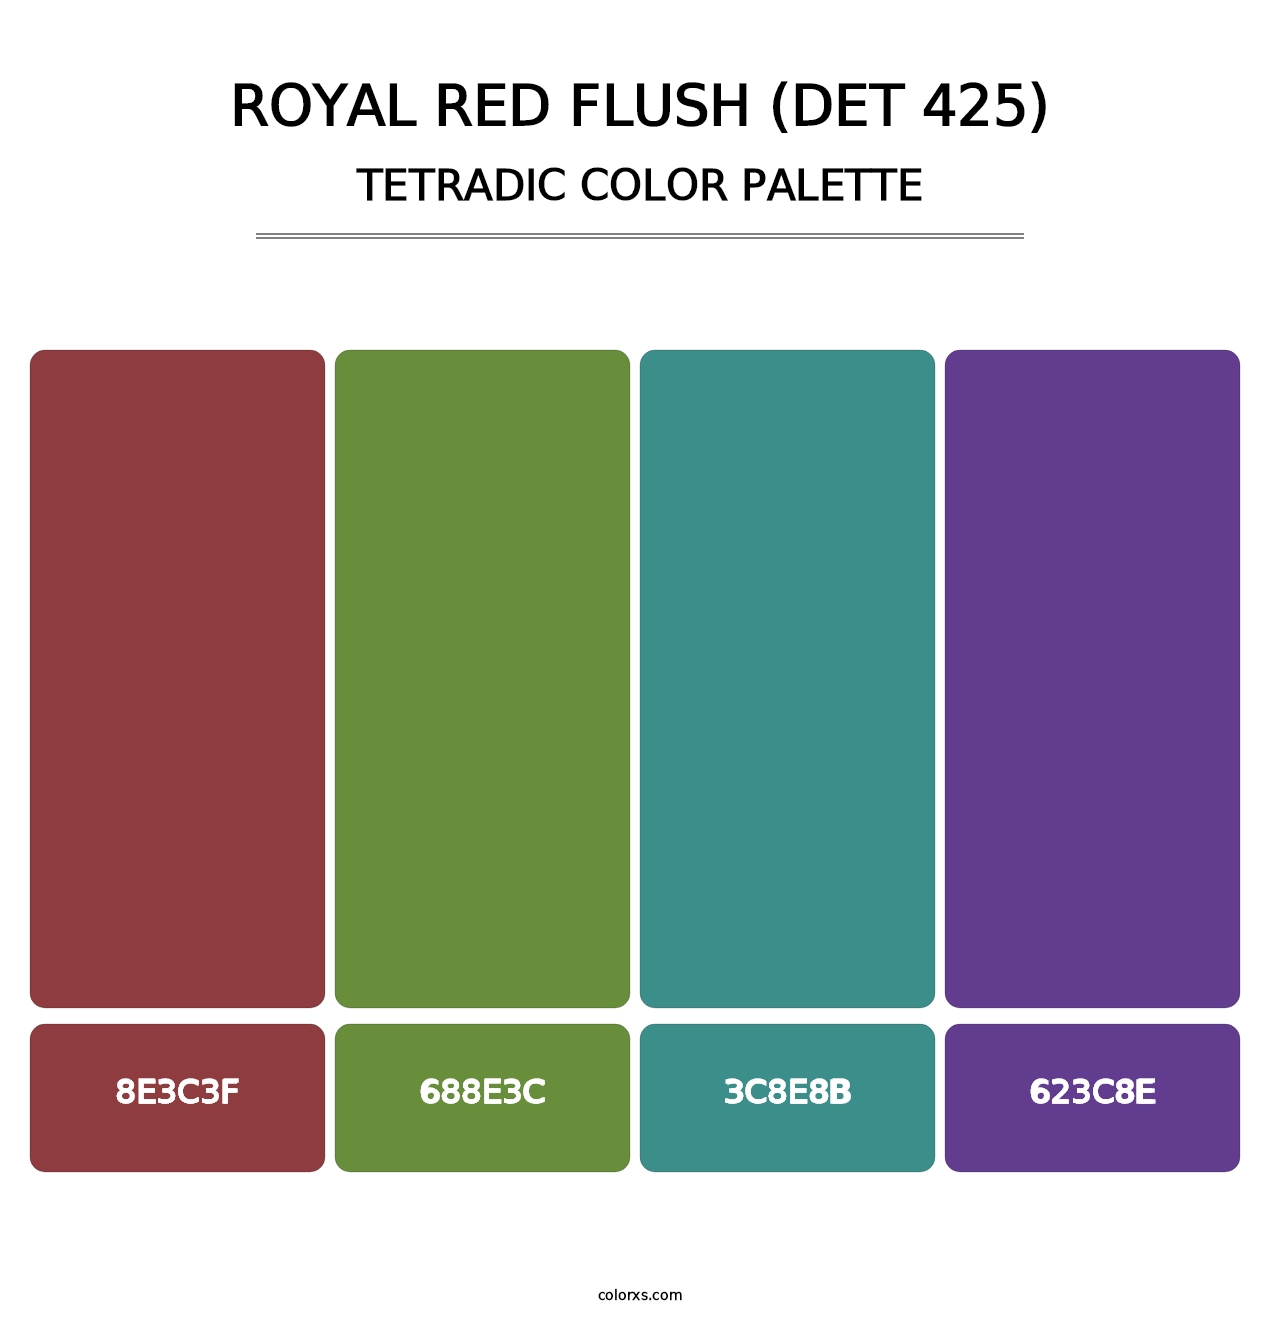 Royal Red Flush (DET 425) - Tetradic Color Palette